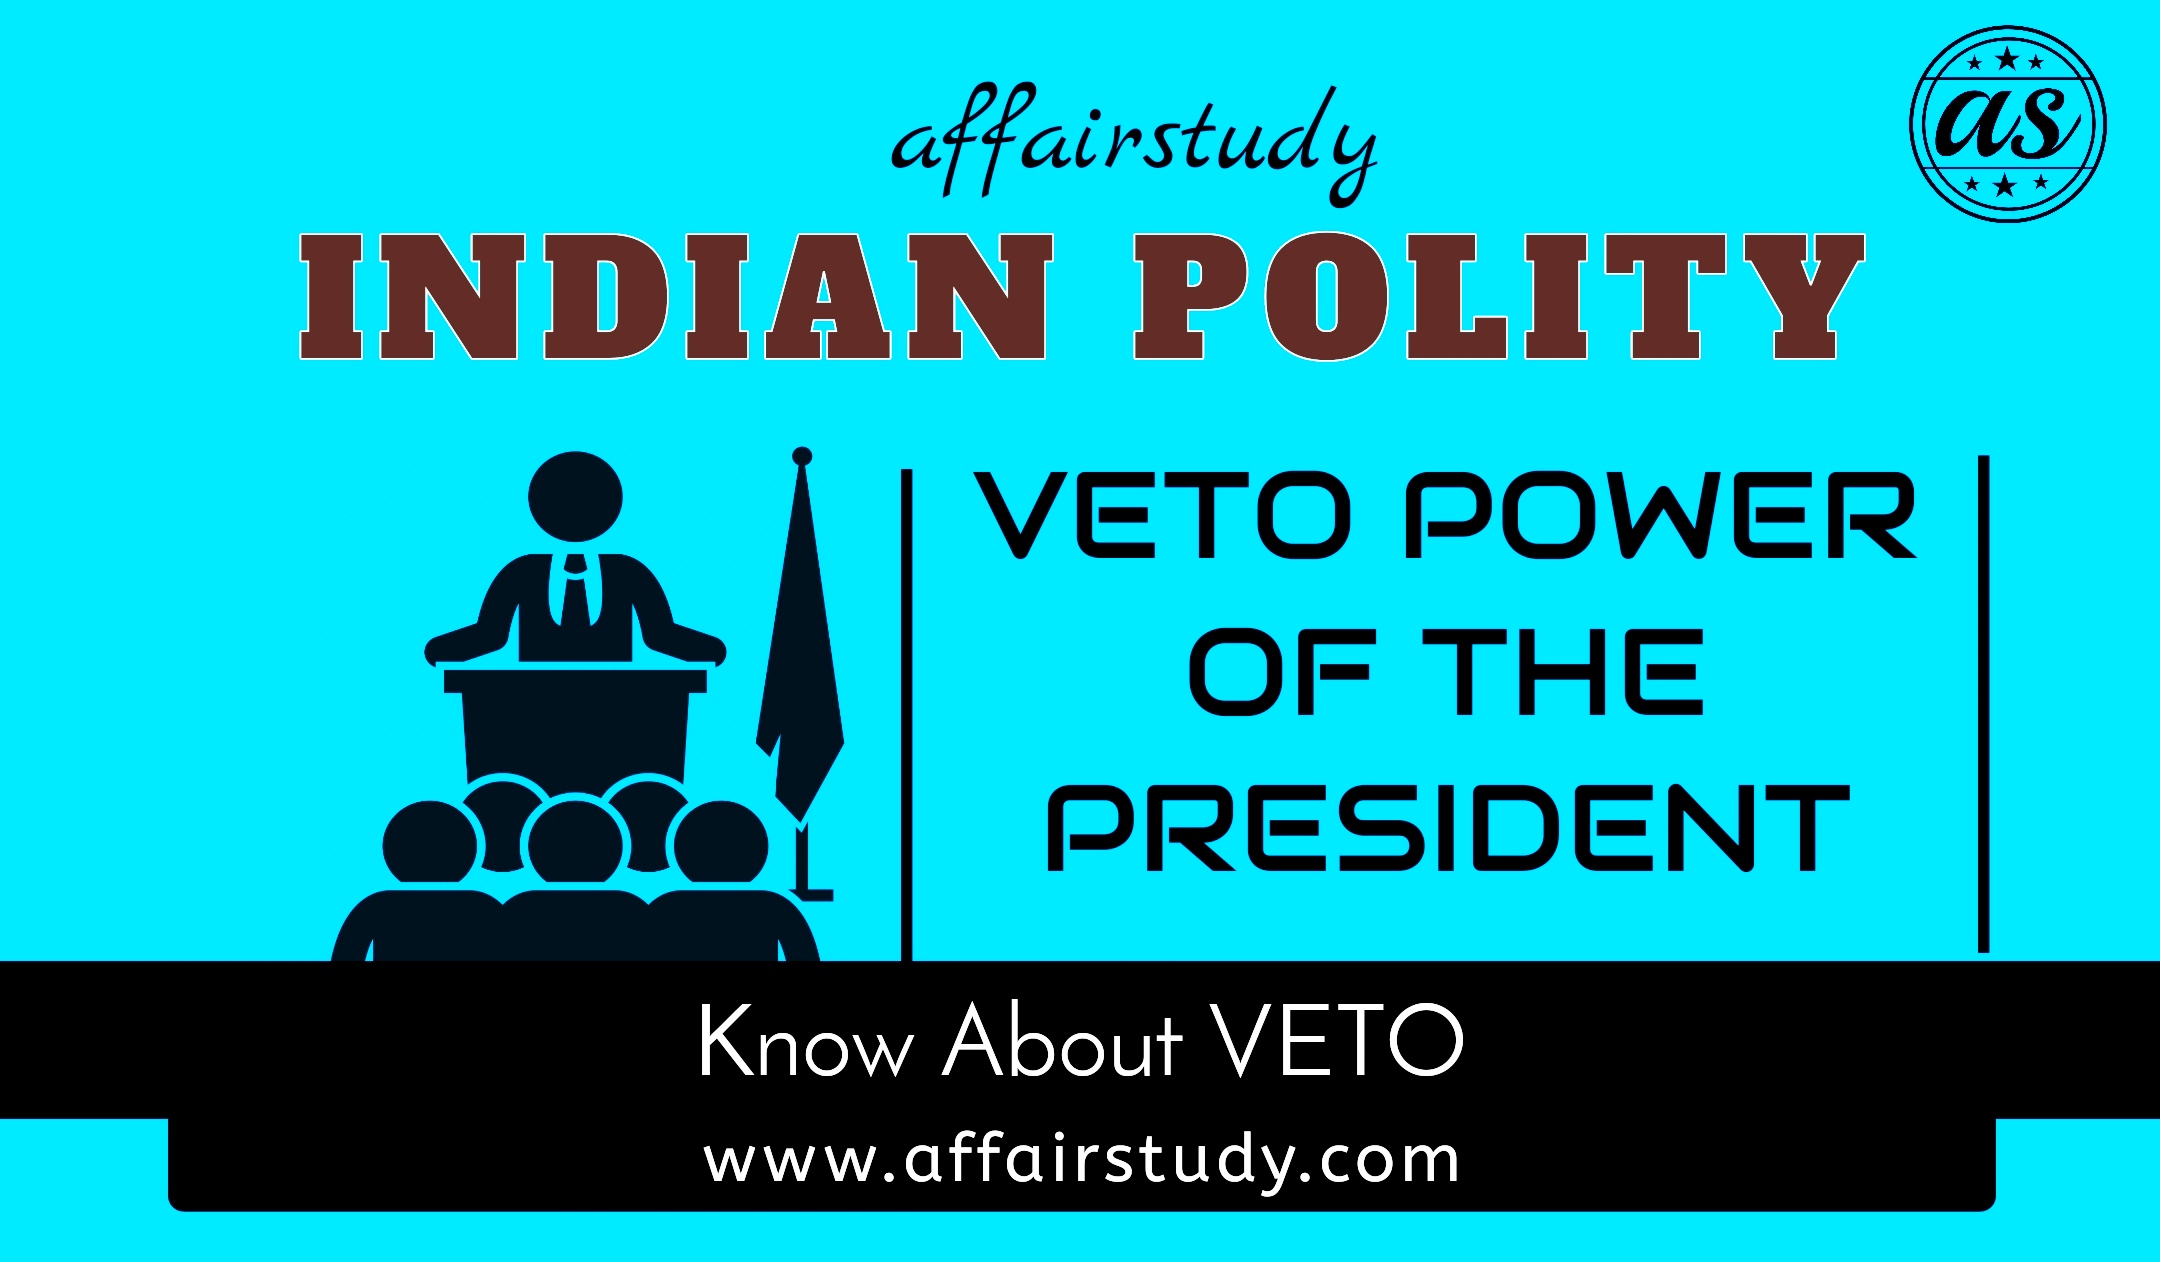 The Veto Power of the President